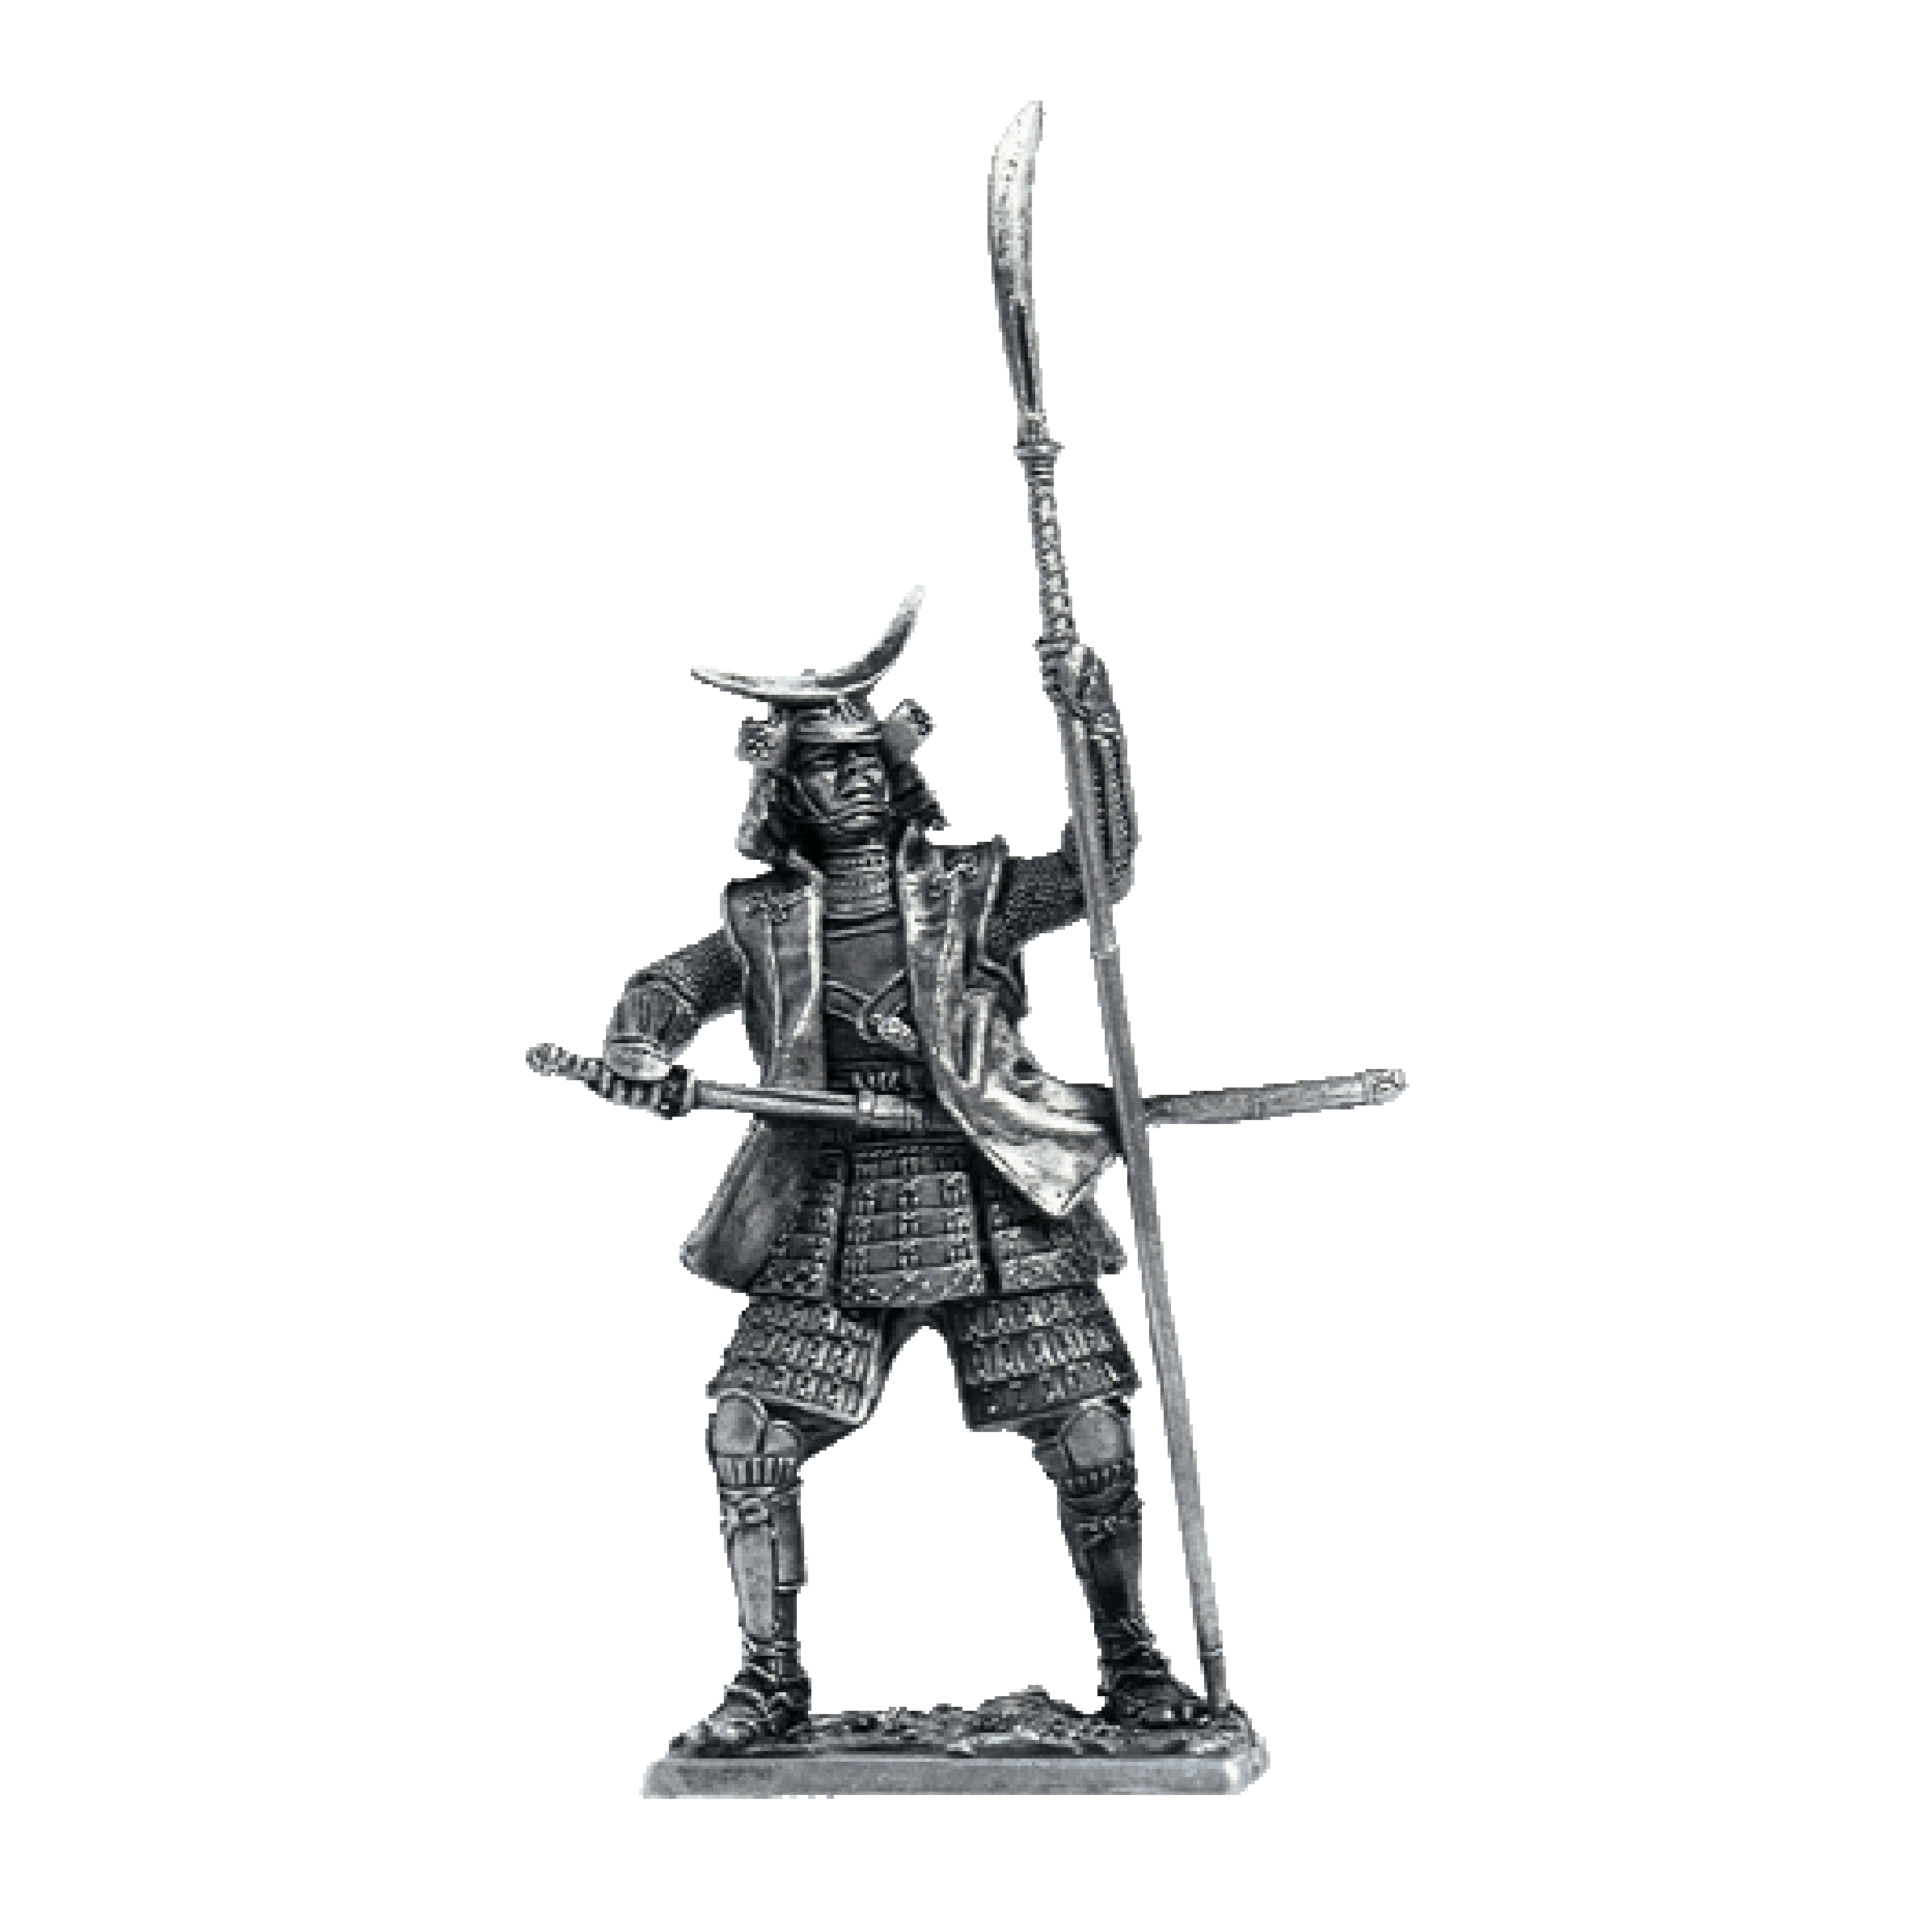 Samurai, 1600